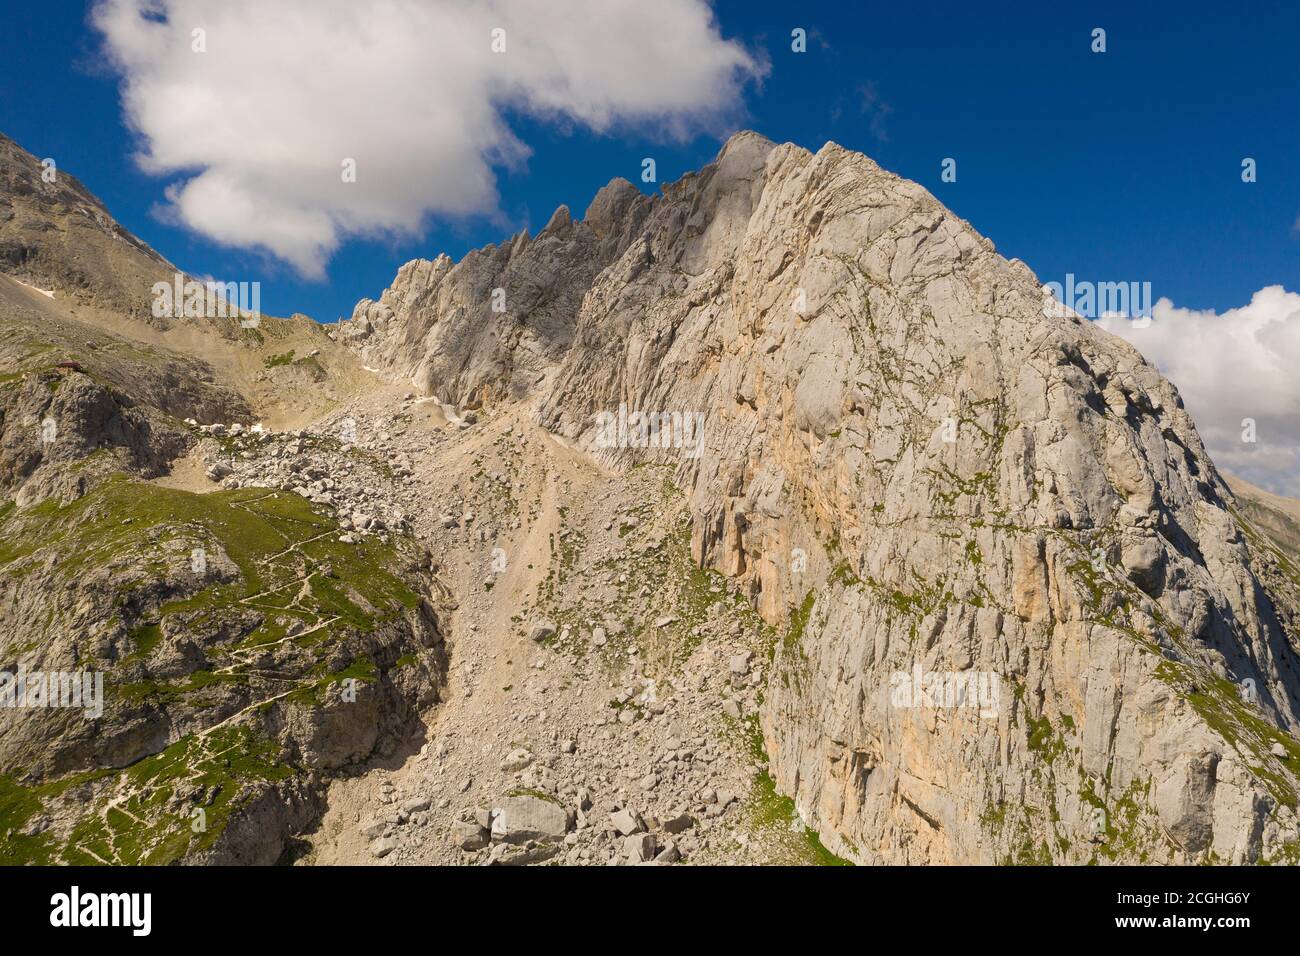 veduta aerea del sentiero che conduce ai franchetti rifugio nella zona montana del gran sasso italia abruzzo Foto Stock